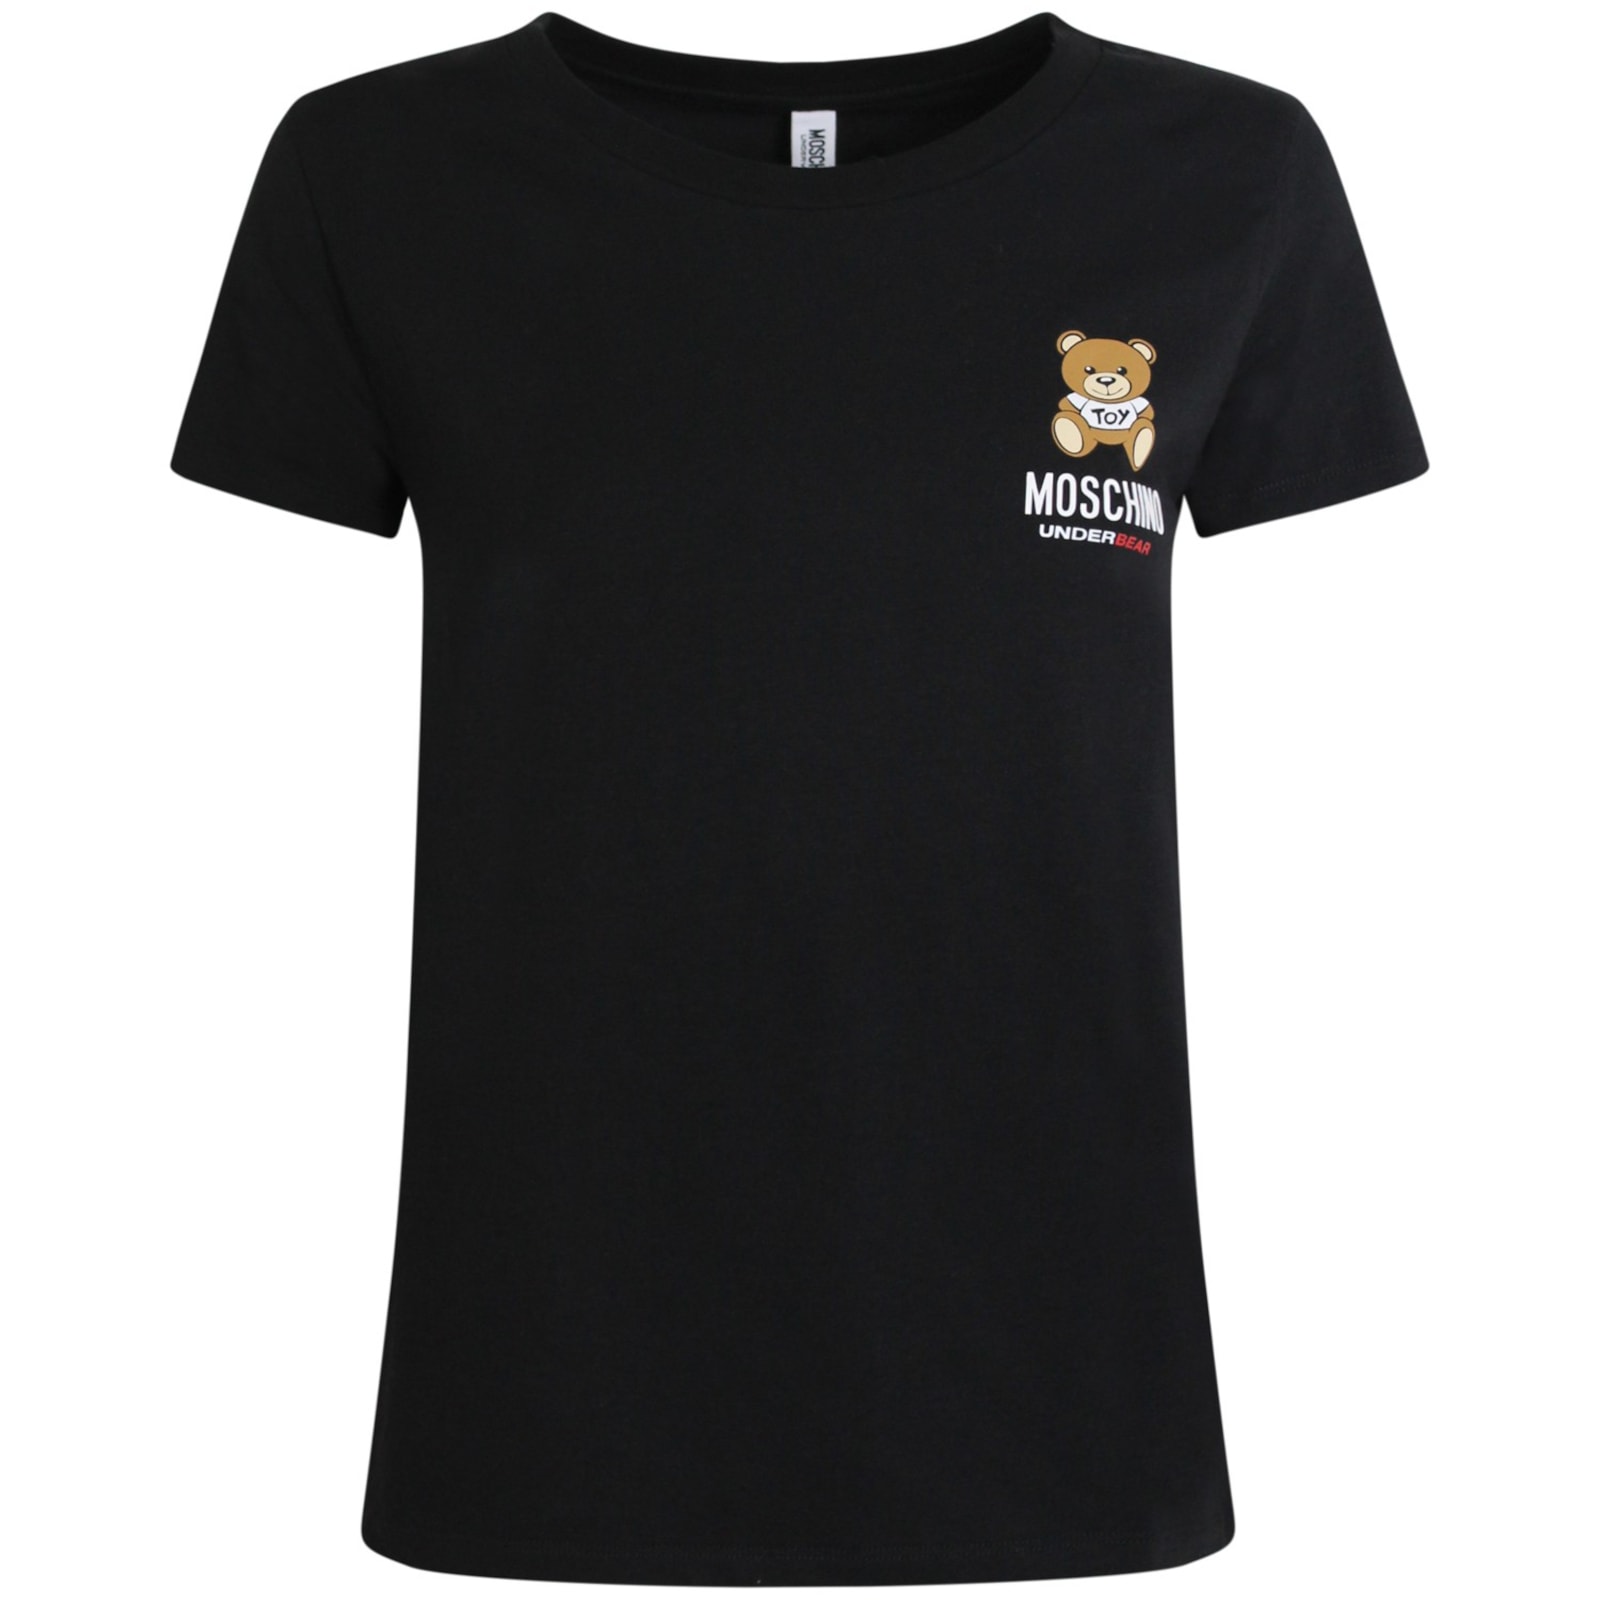 Moschino T-shirt Nera Con Logo Zua191290030555